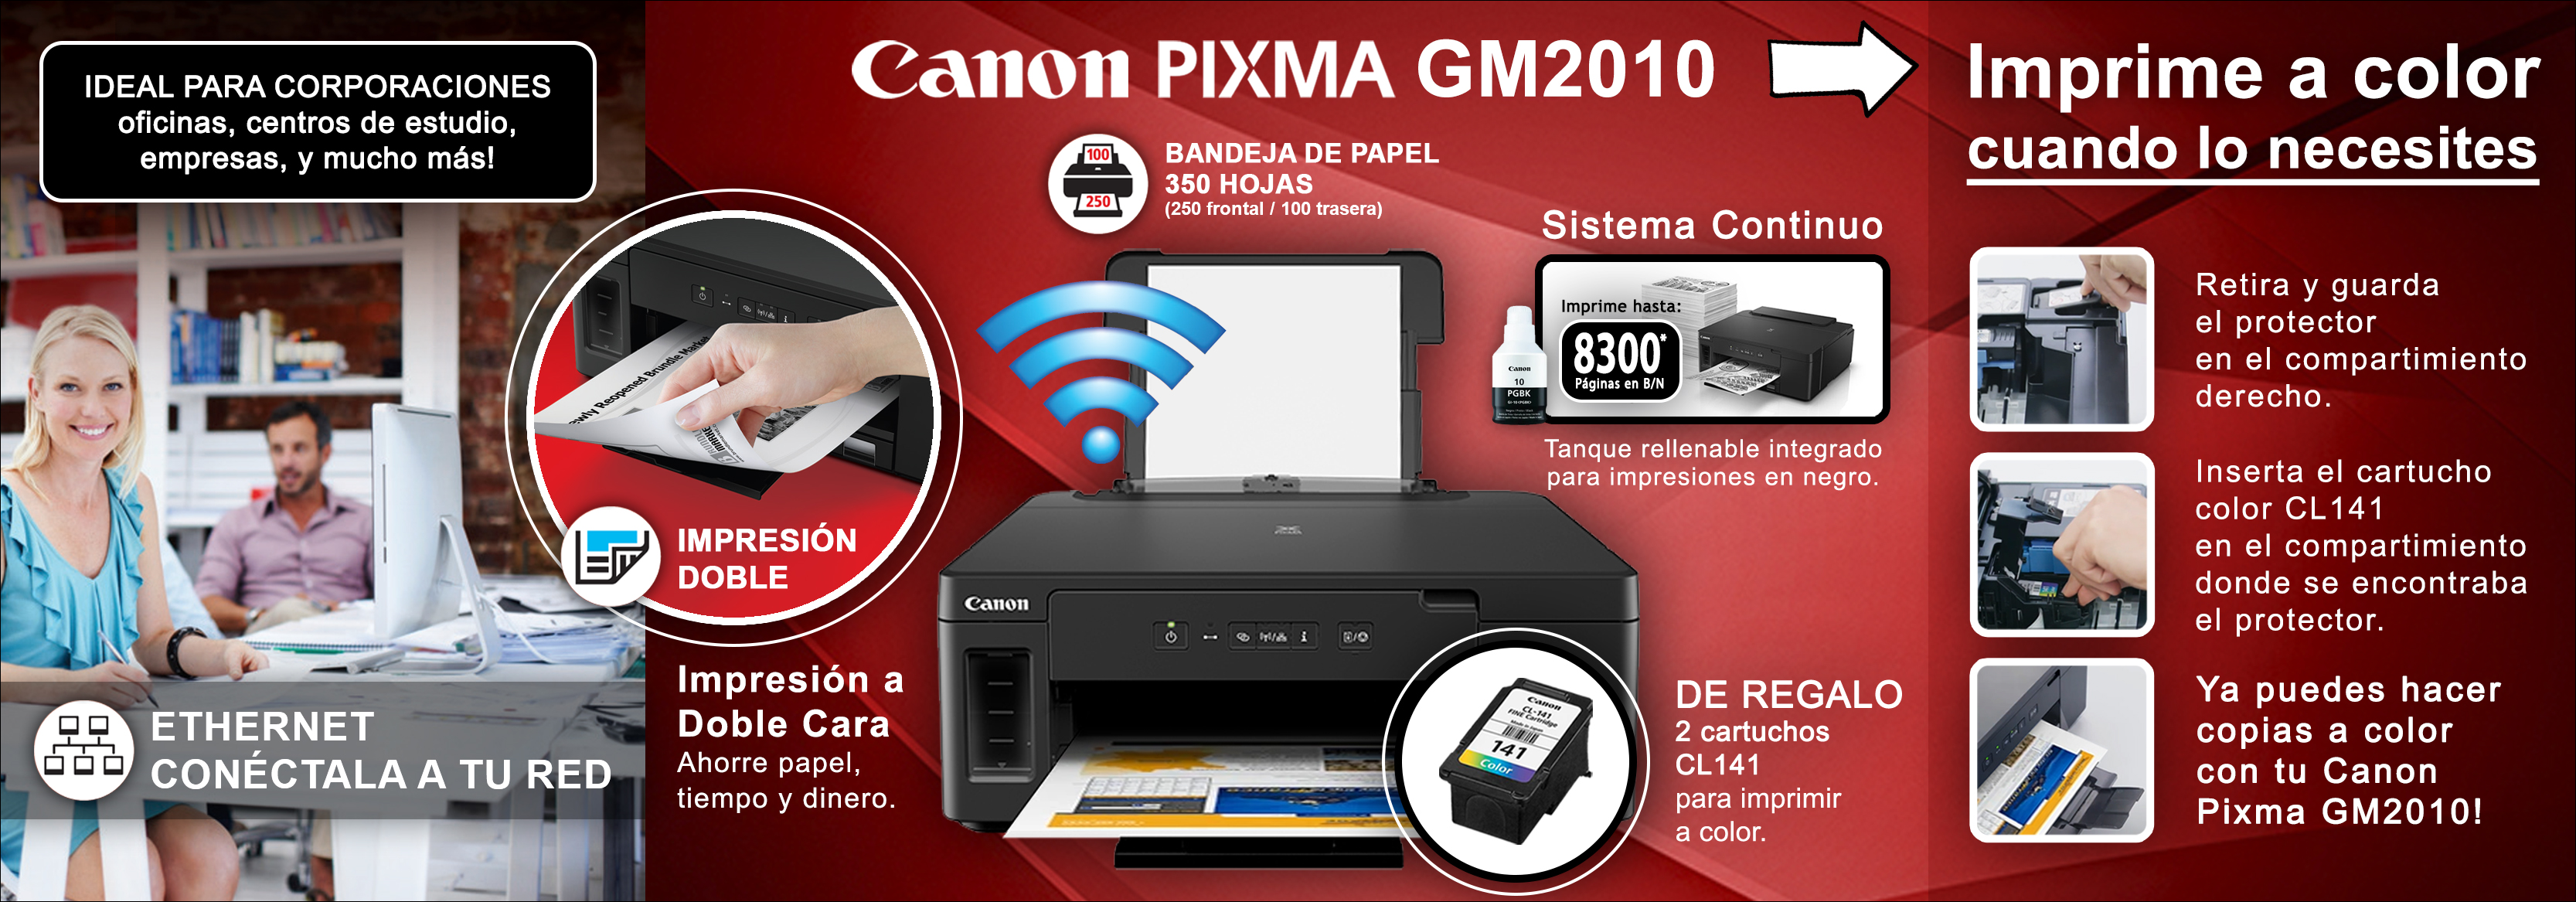 CANON-05-PIXMA_GM2010